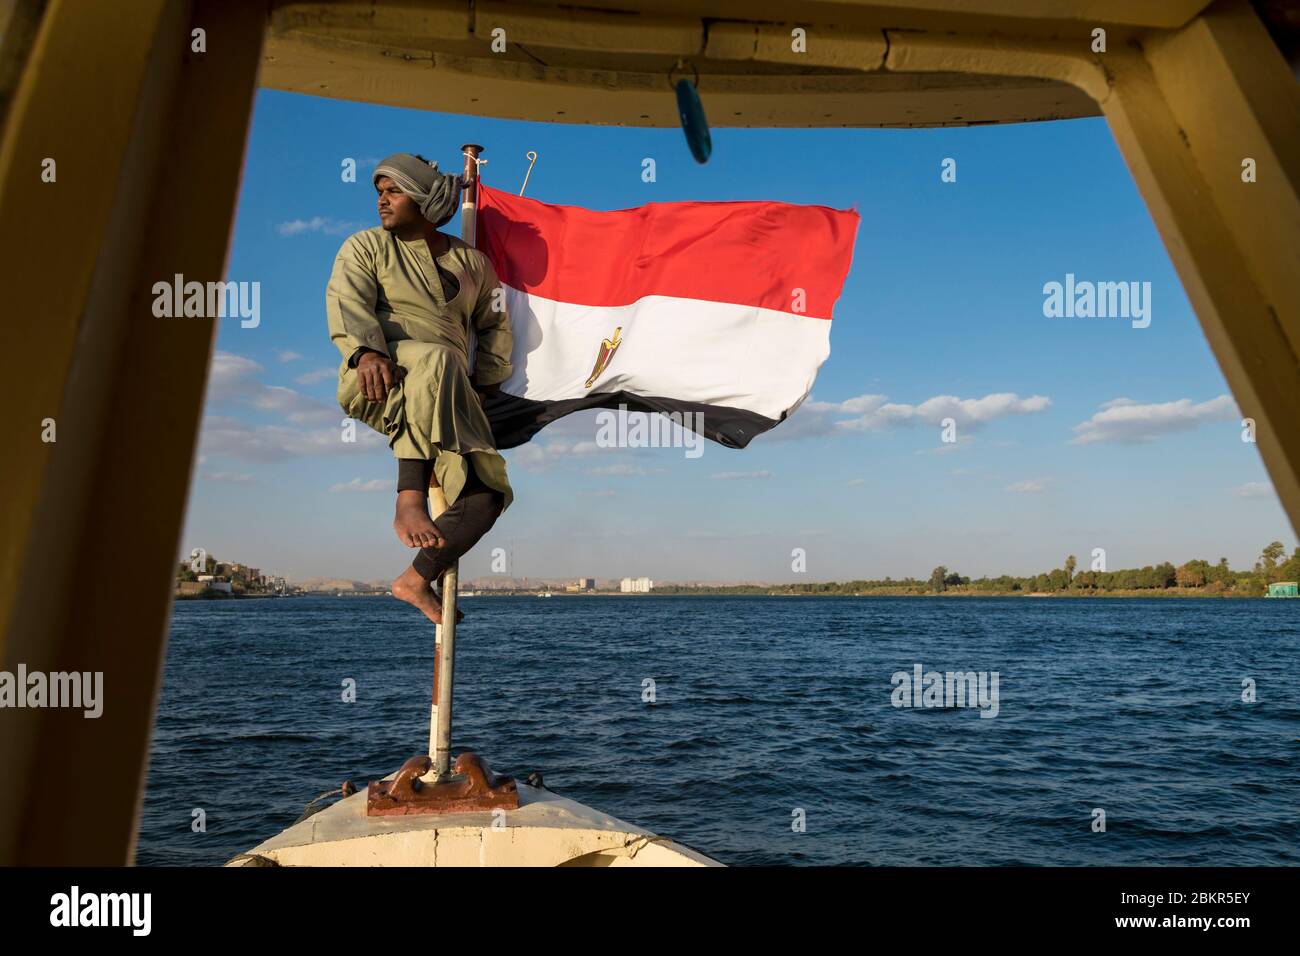 Égypte, haute Égypte, vallée du Nil, Esna, sur un bateau le Nil entre Louxor et Assouan, équipe avec un drapeau égyptien Banque D'Images